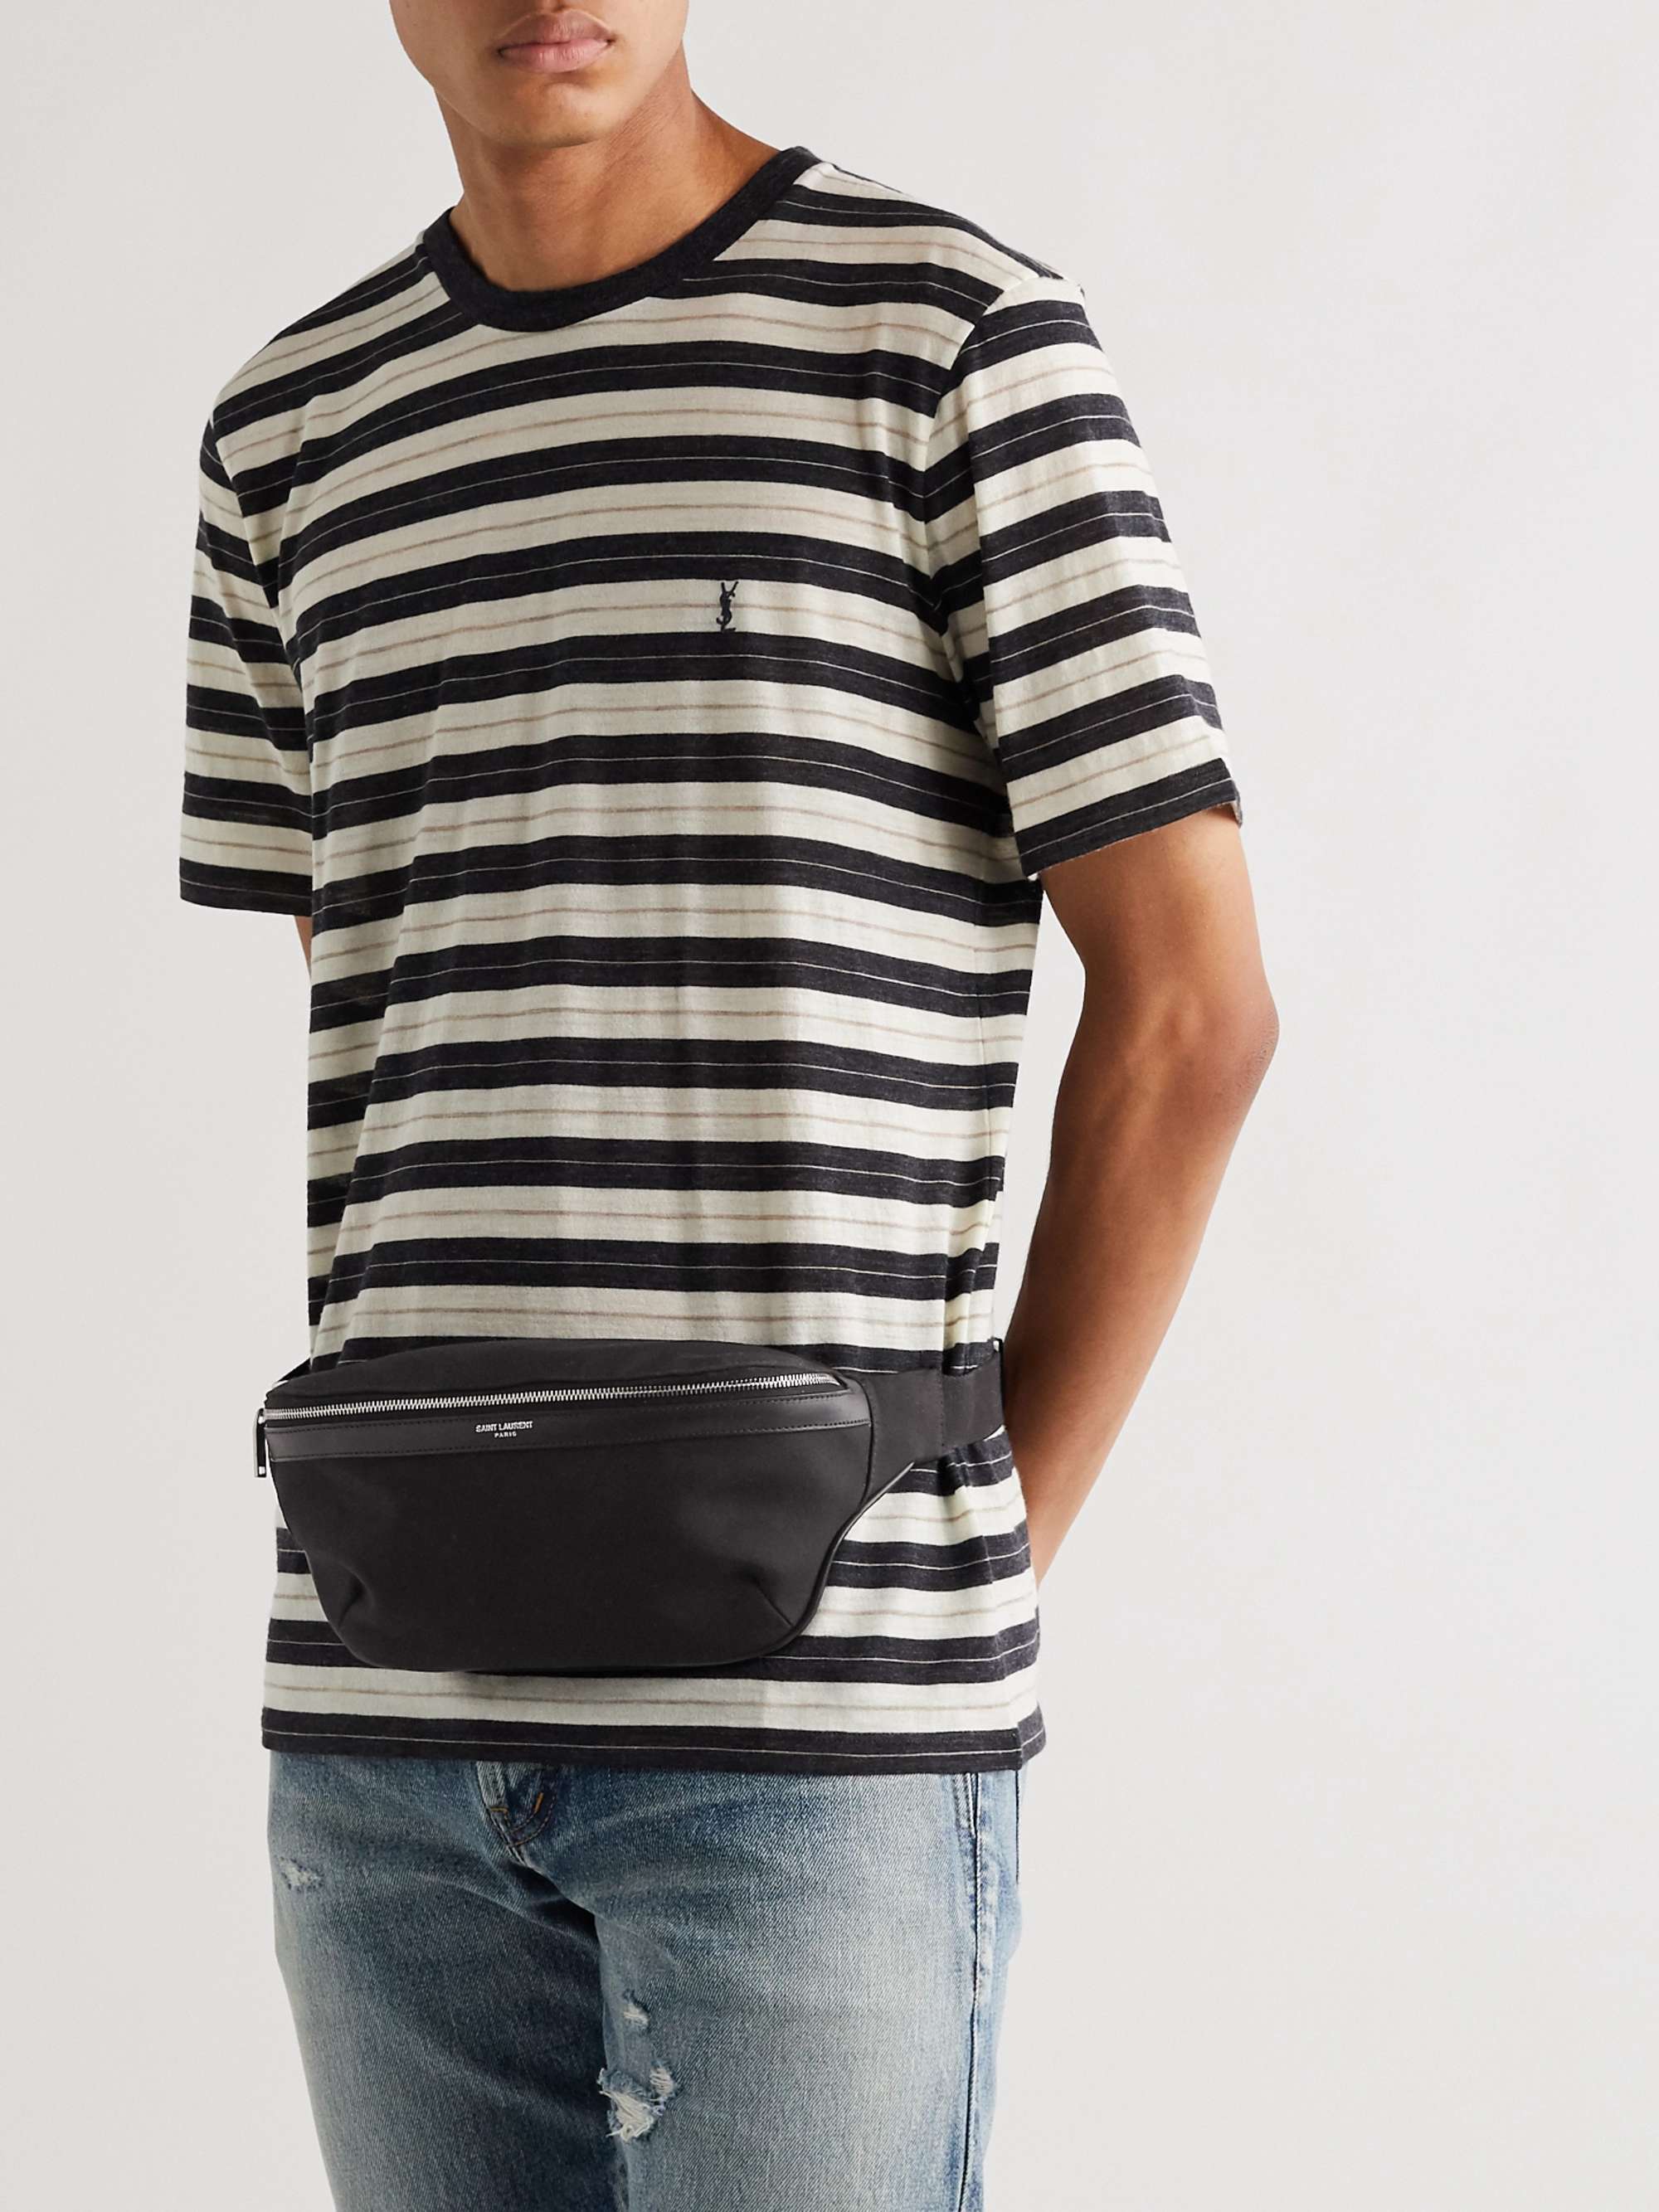 SAINT LAURENT Leather-Trimmed Canvas Belt Bag for Men | MR PORTER